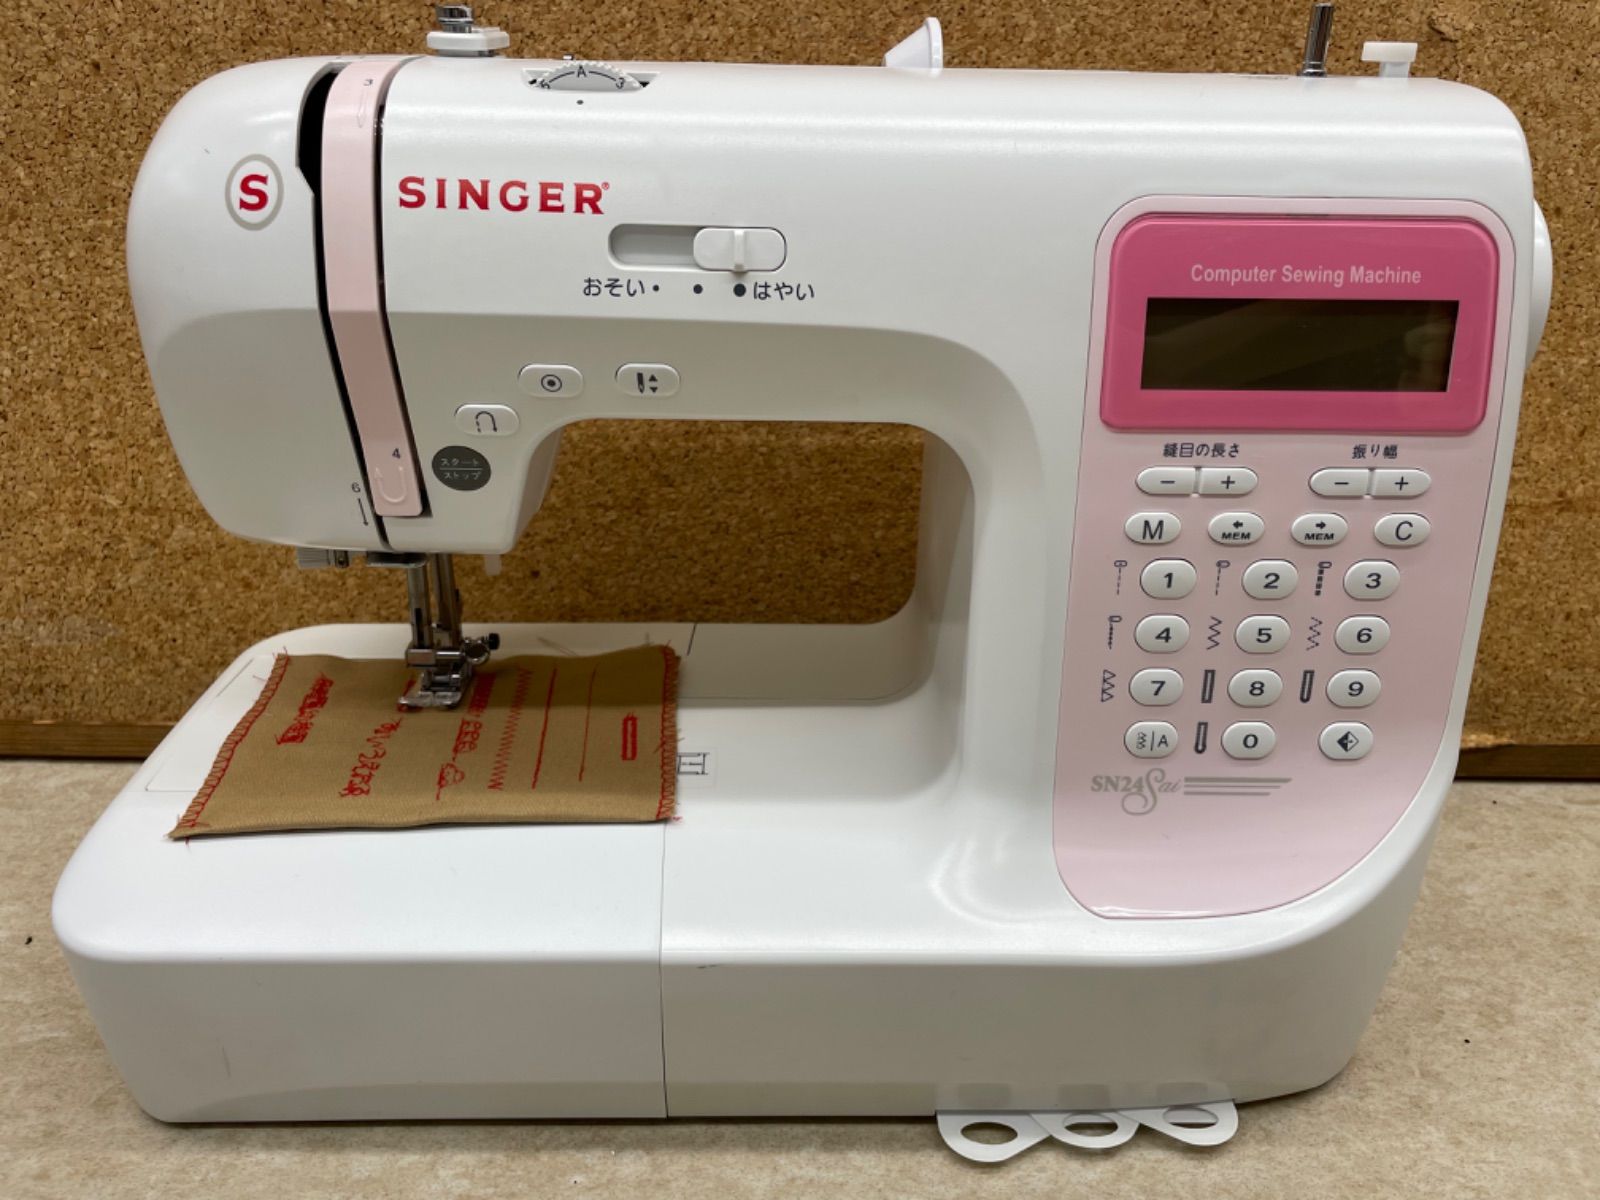 シンガーミシン SN24Sai ミシン 実用縫い 文字縫い 飾り縫い 中古品